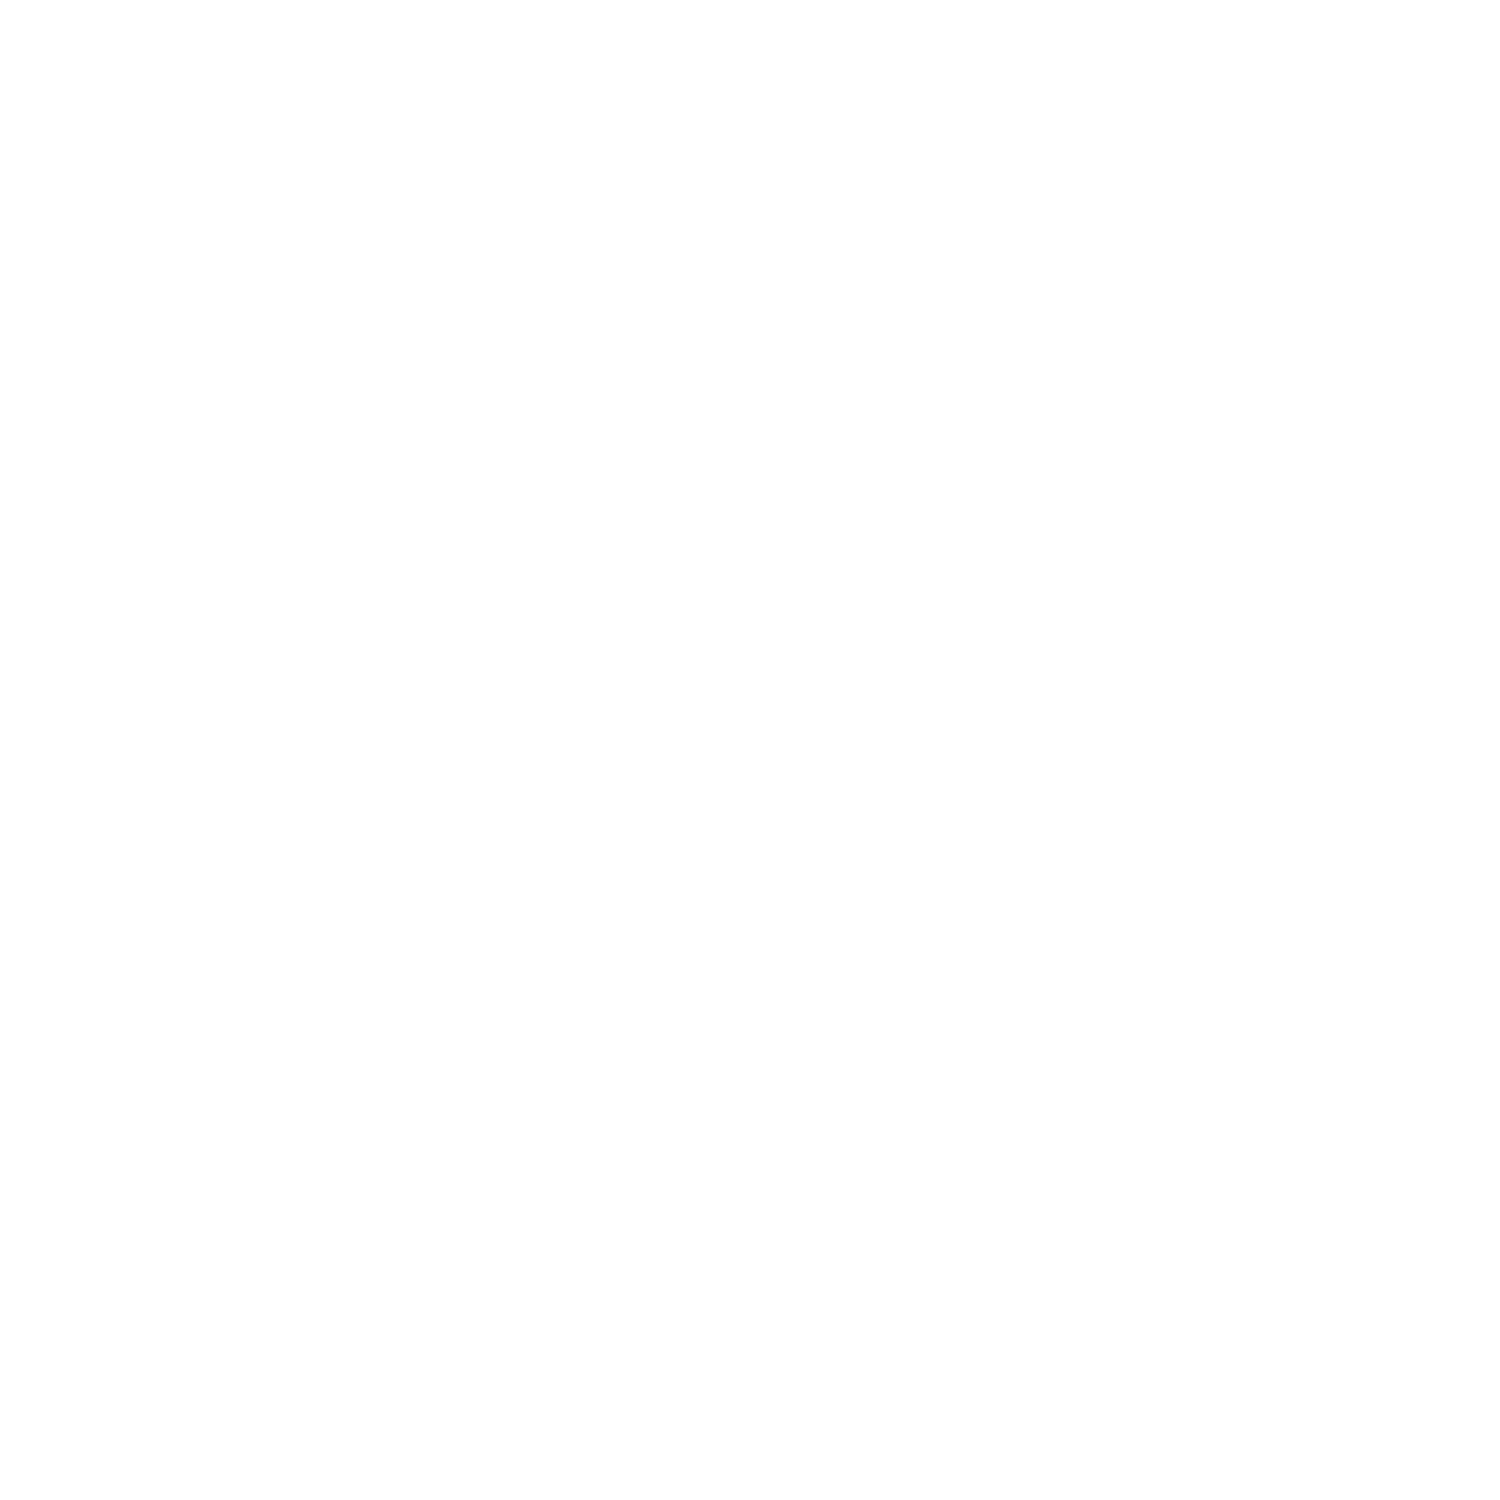 Lori Williams